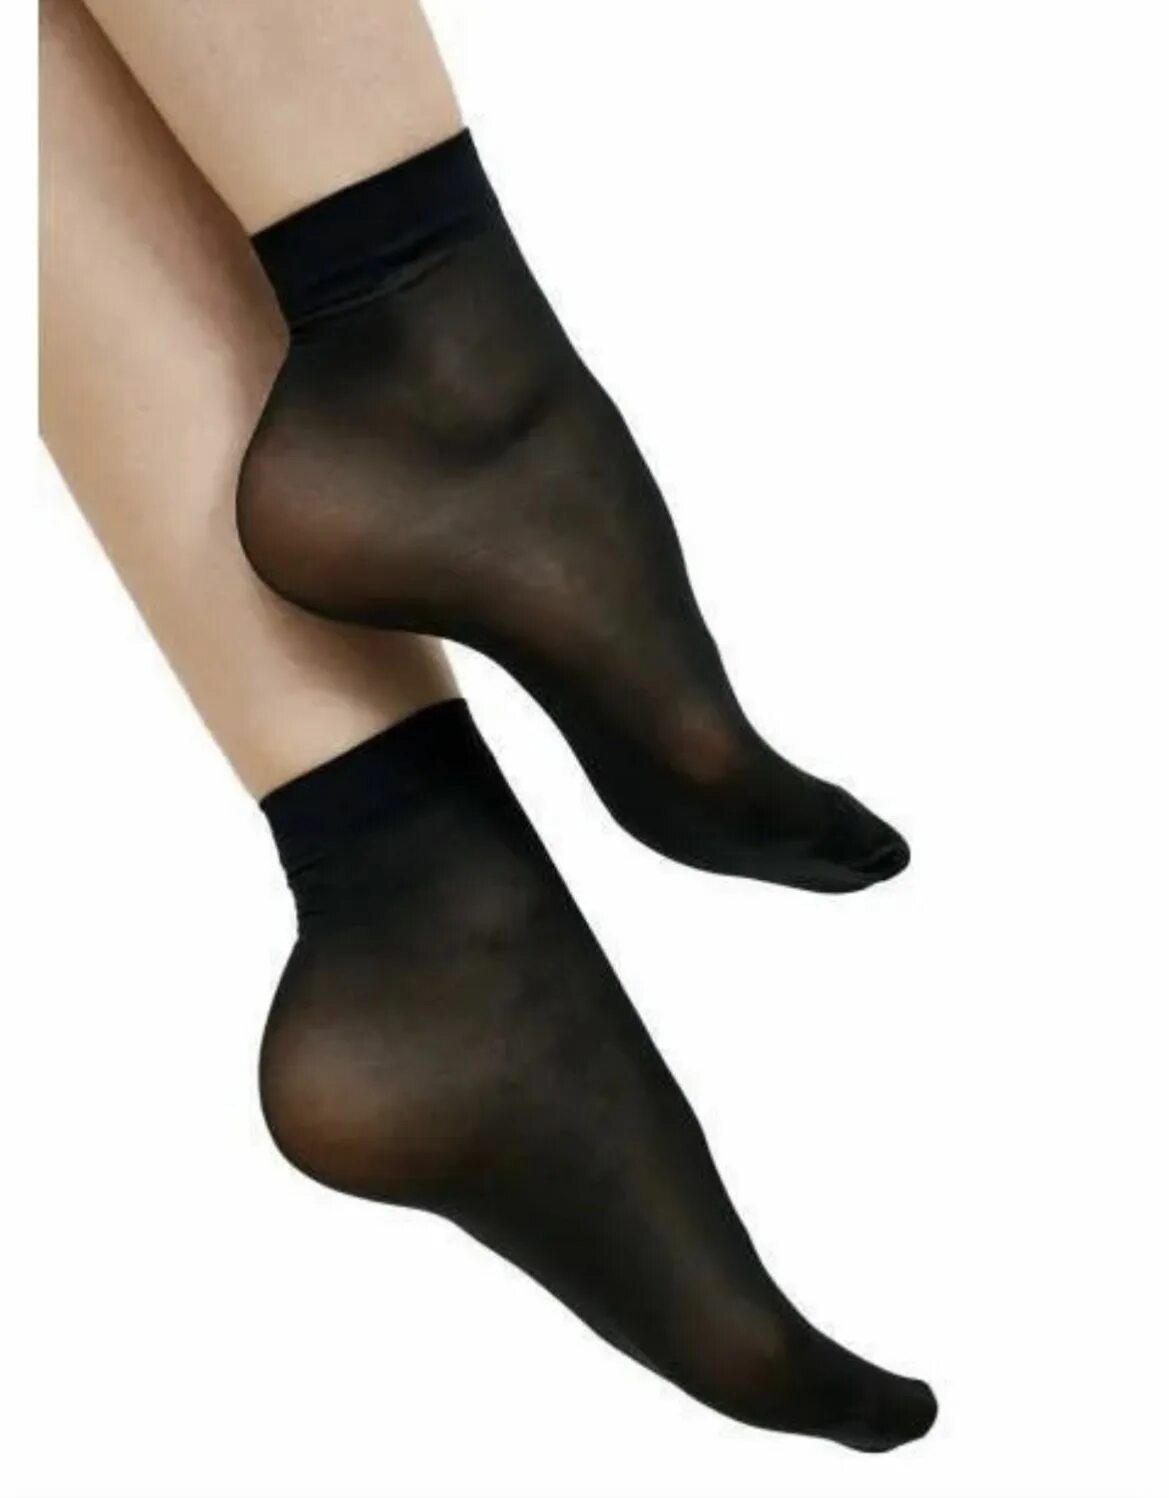 Носки капрон. Носки капроновые женские. Носки капроновые черные. Широкие капроновые носки.